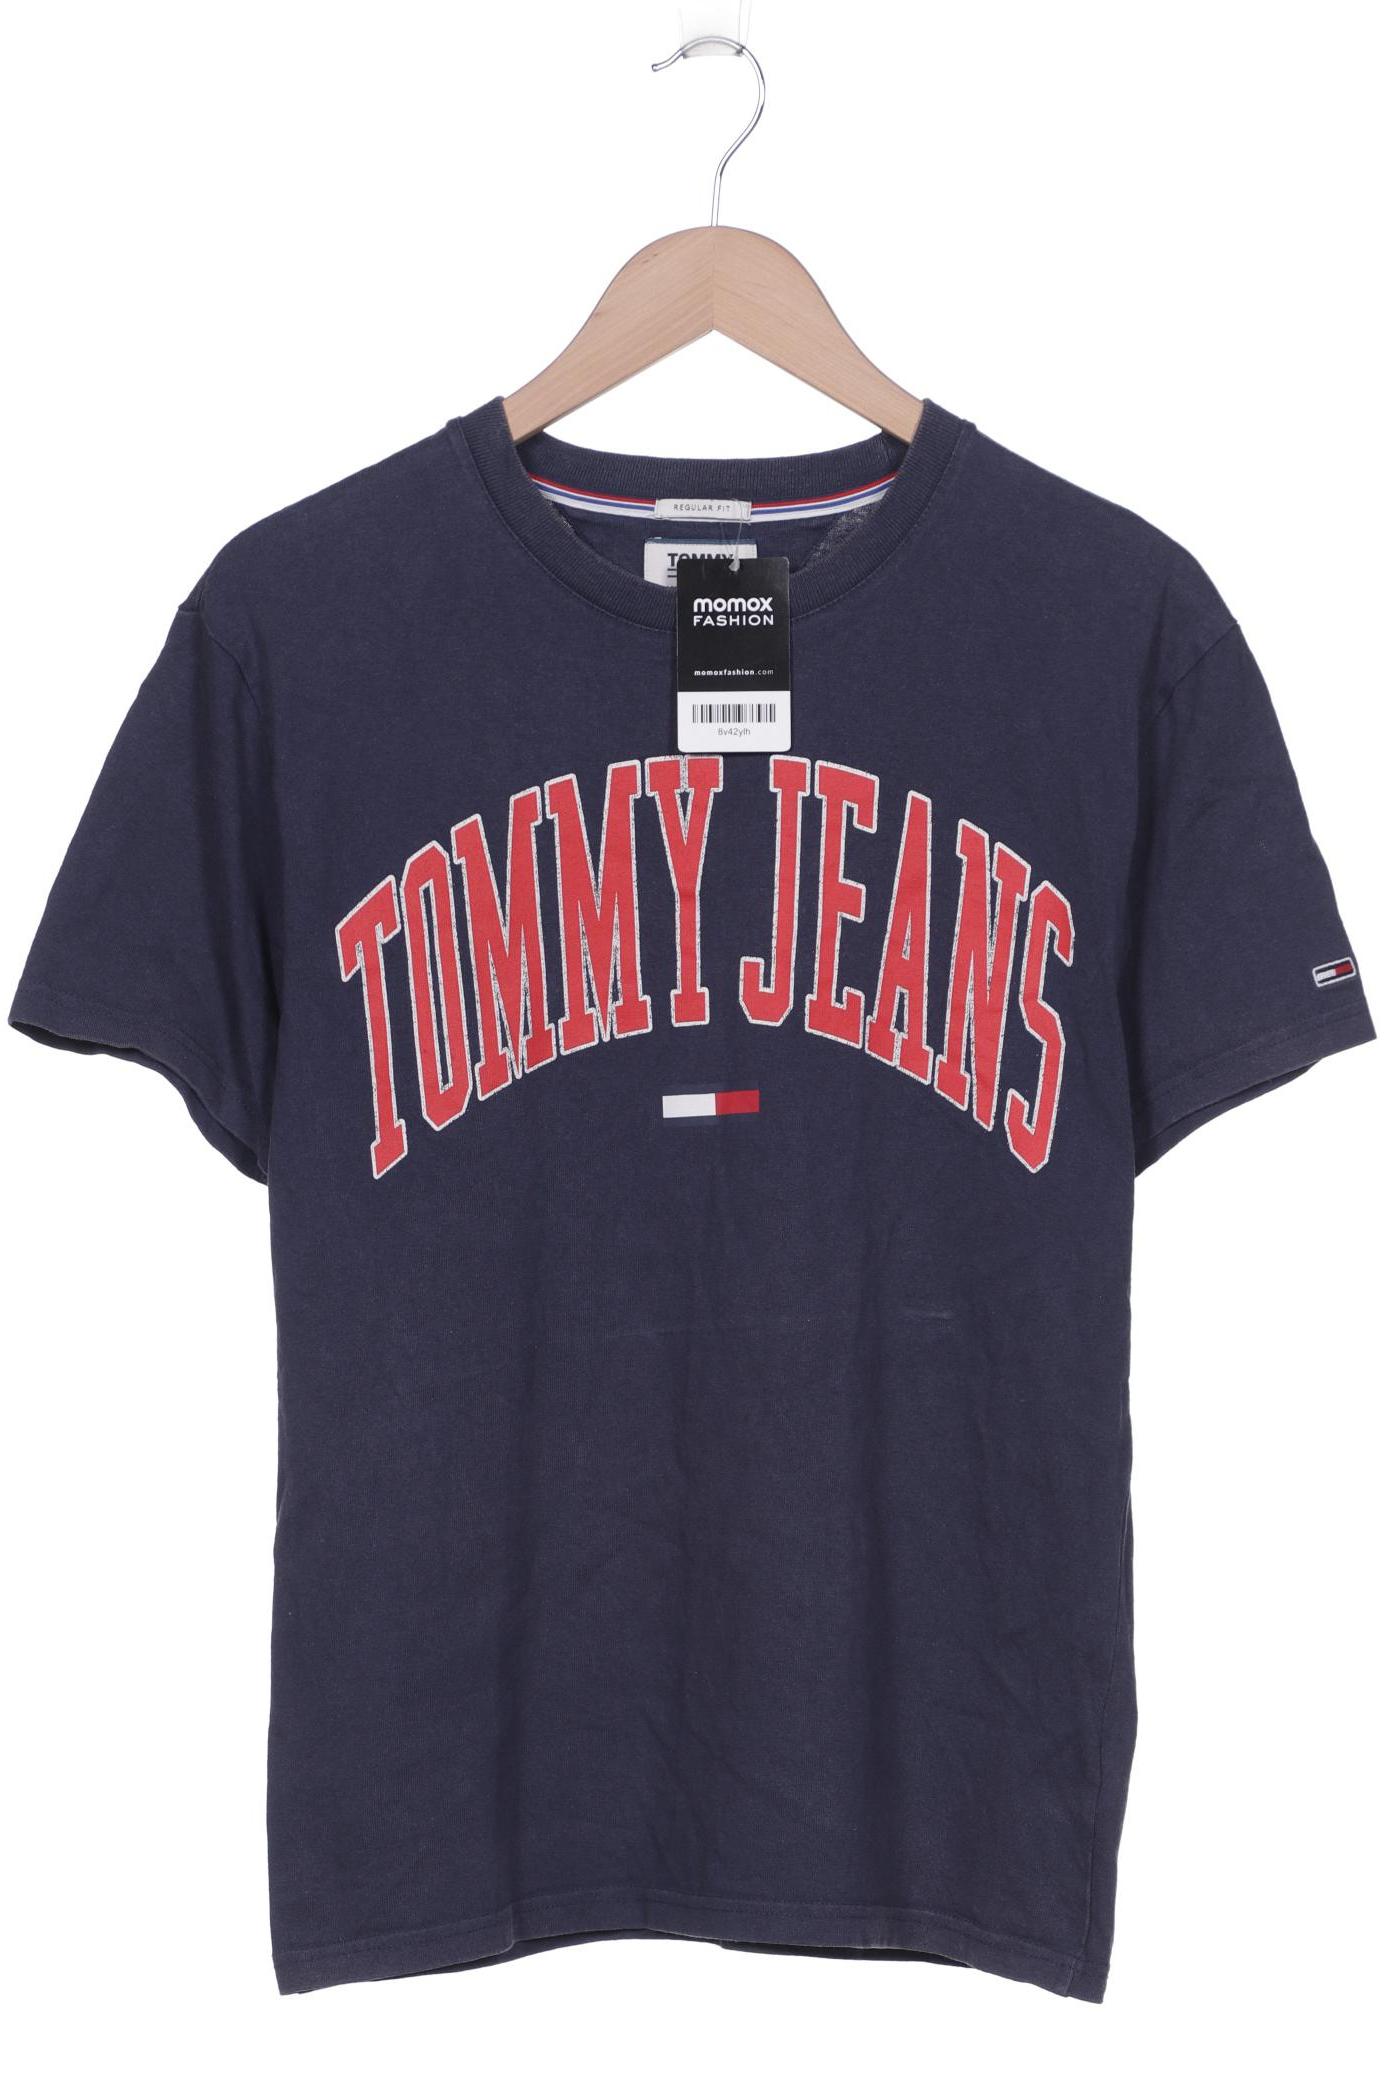 Tommy Jeans Herren T-Shirt, marineblau von Tommy Jeans